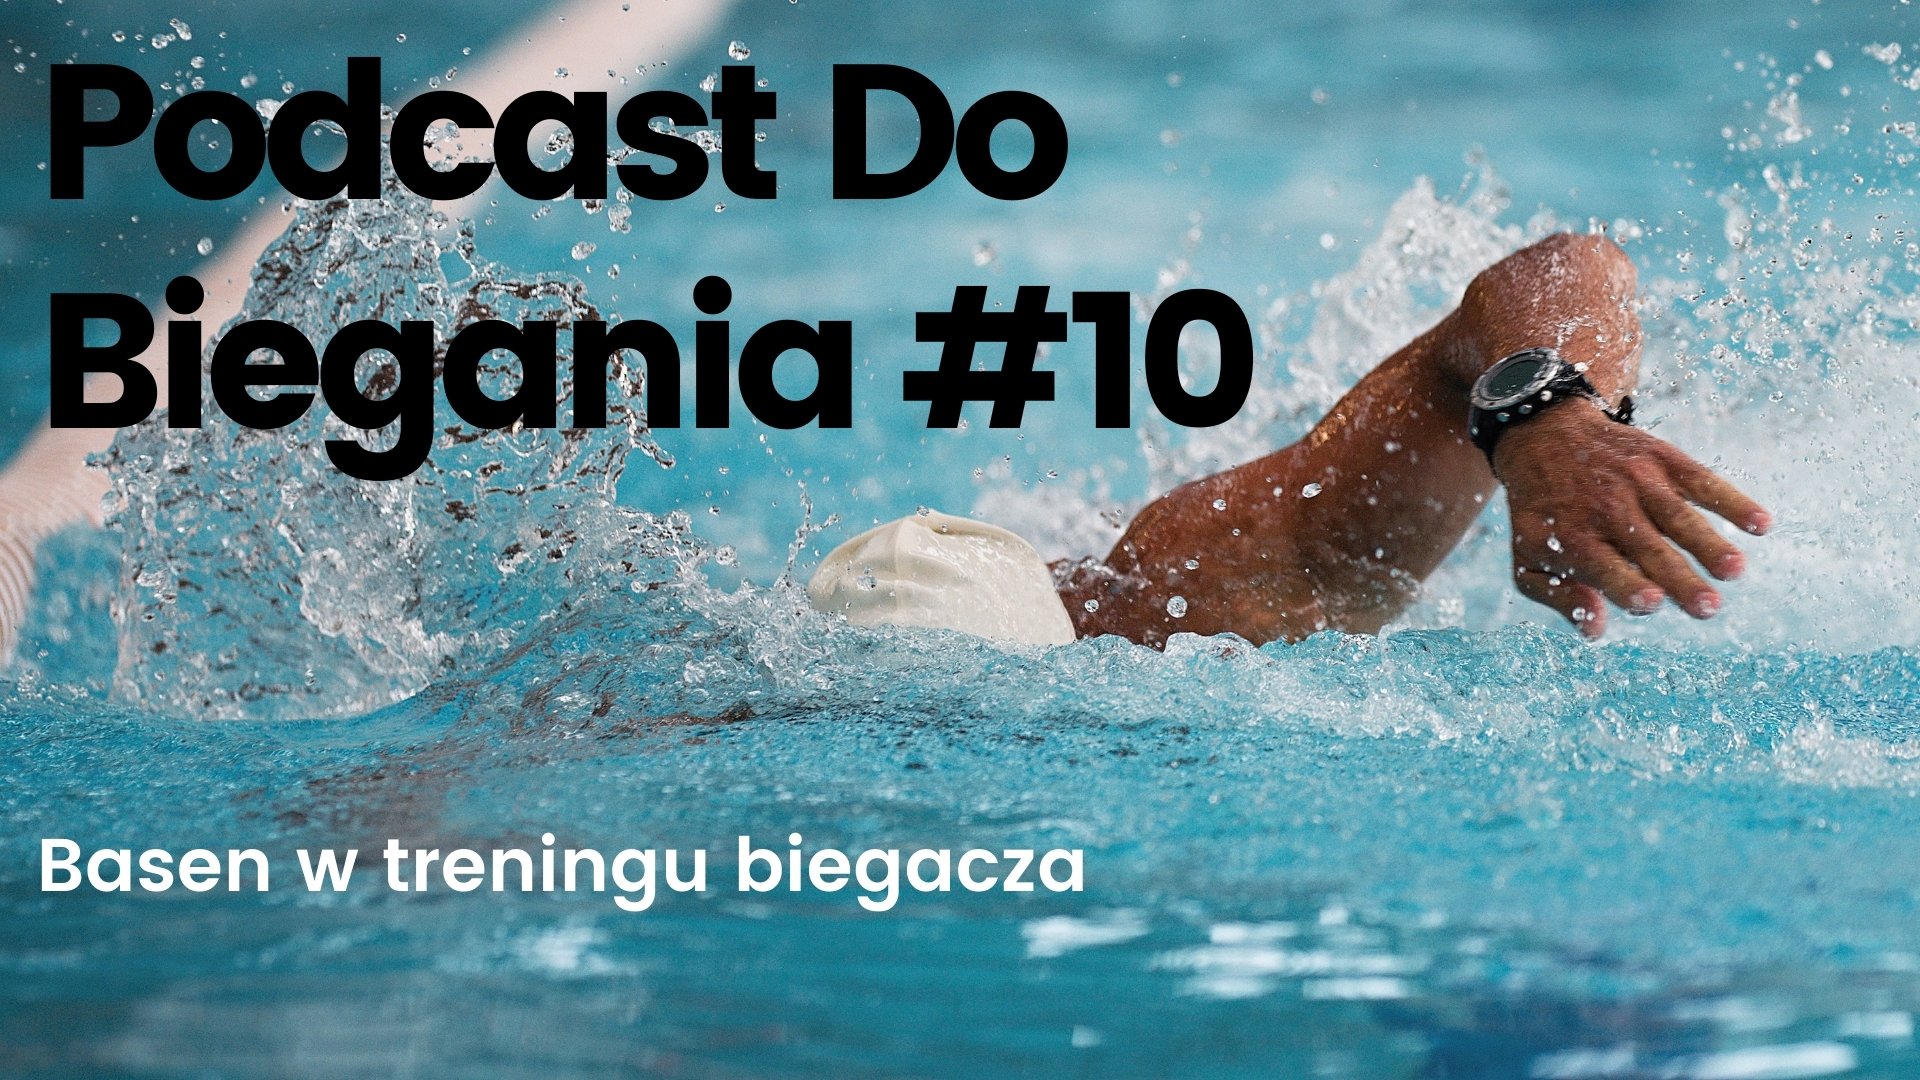 Podcast do biegania 10 basen w treningu biegacza